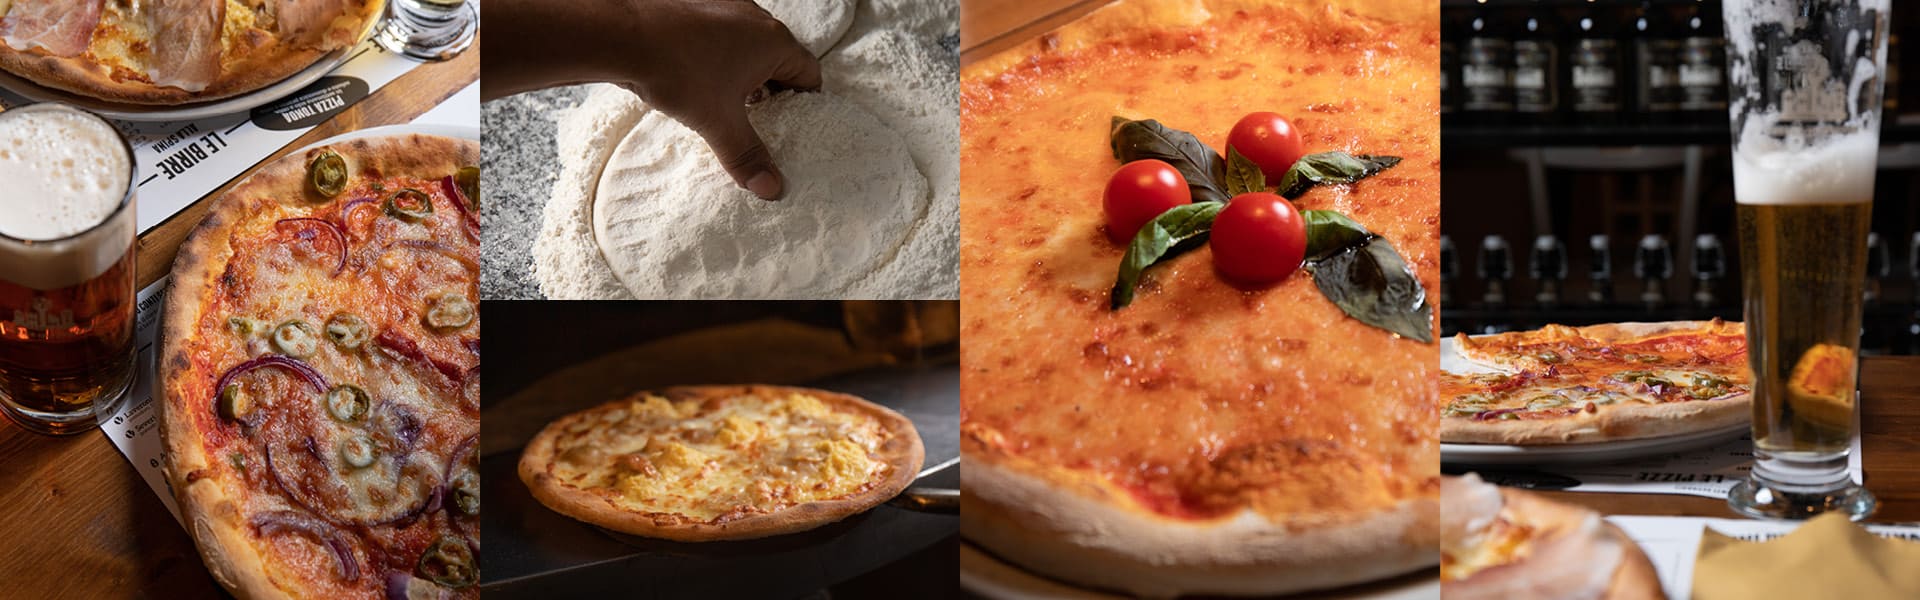 Pizzeria Fabbrica di Pedavena Lissone (MB) - Pizza cotta in forno a legna, Pizza integrale, Pizza senza glutine